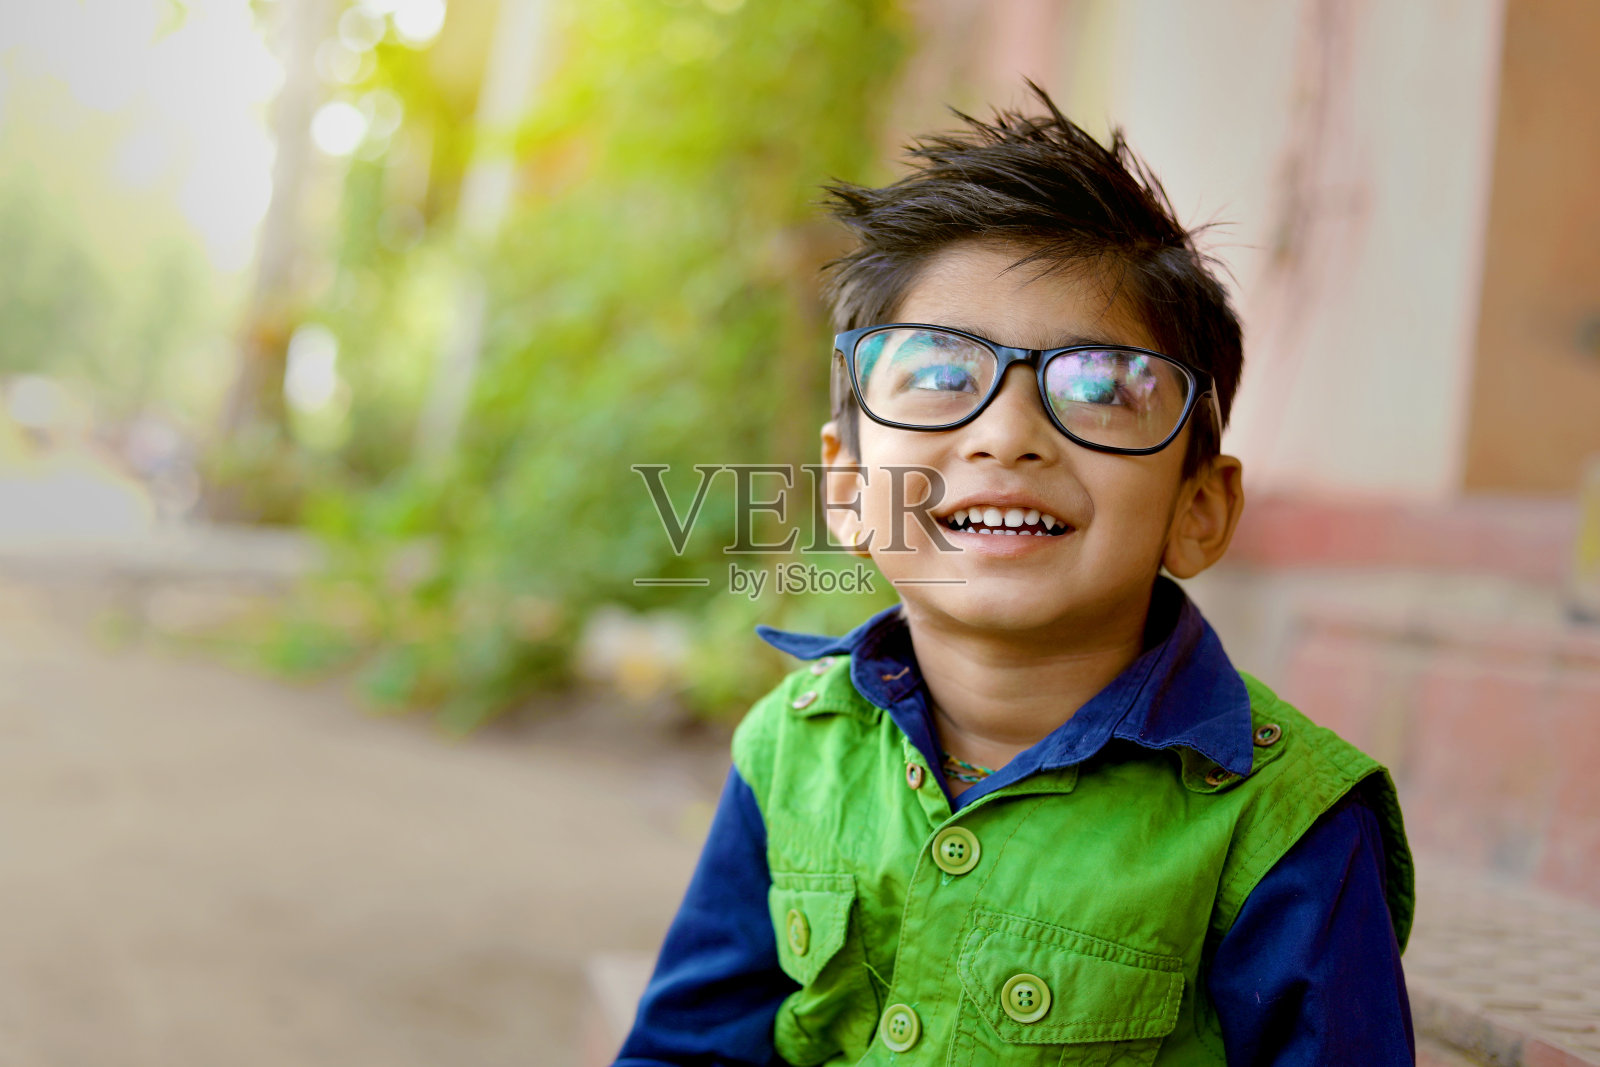 戴眼镜孩子素材-戴眼镜孩子图片-戴眼镜孩子素材图片下载-觅知网